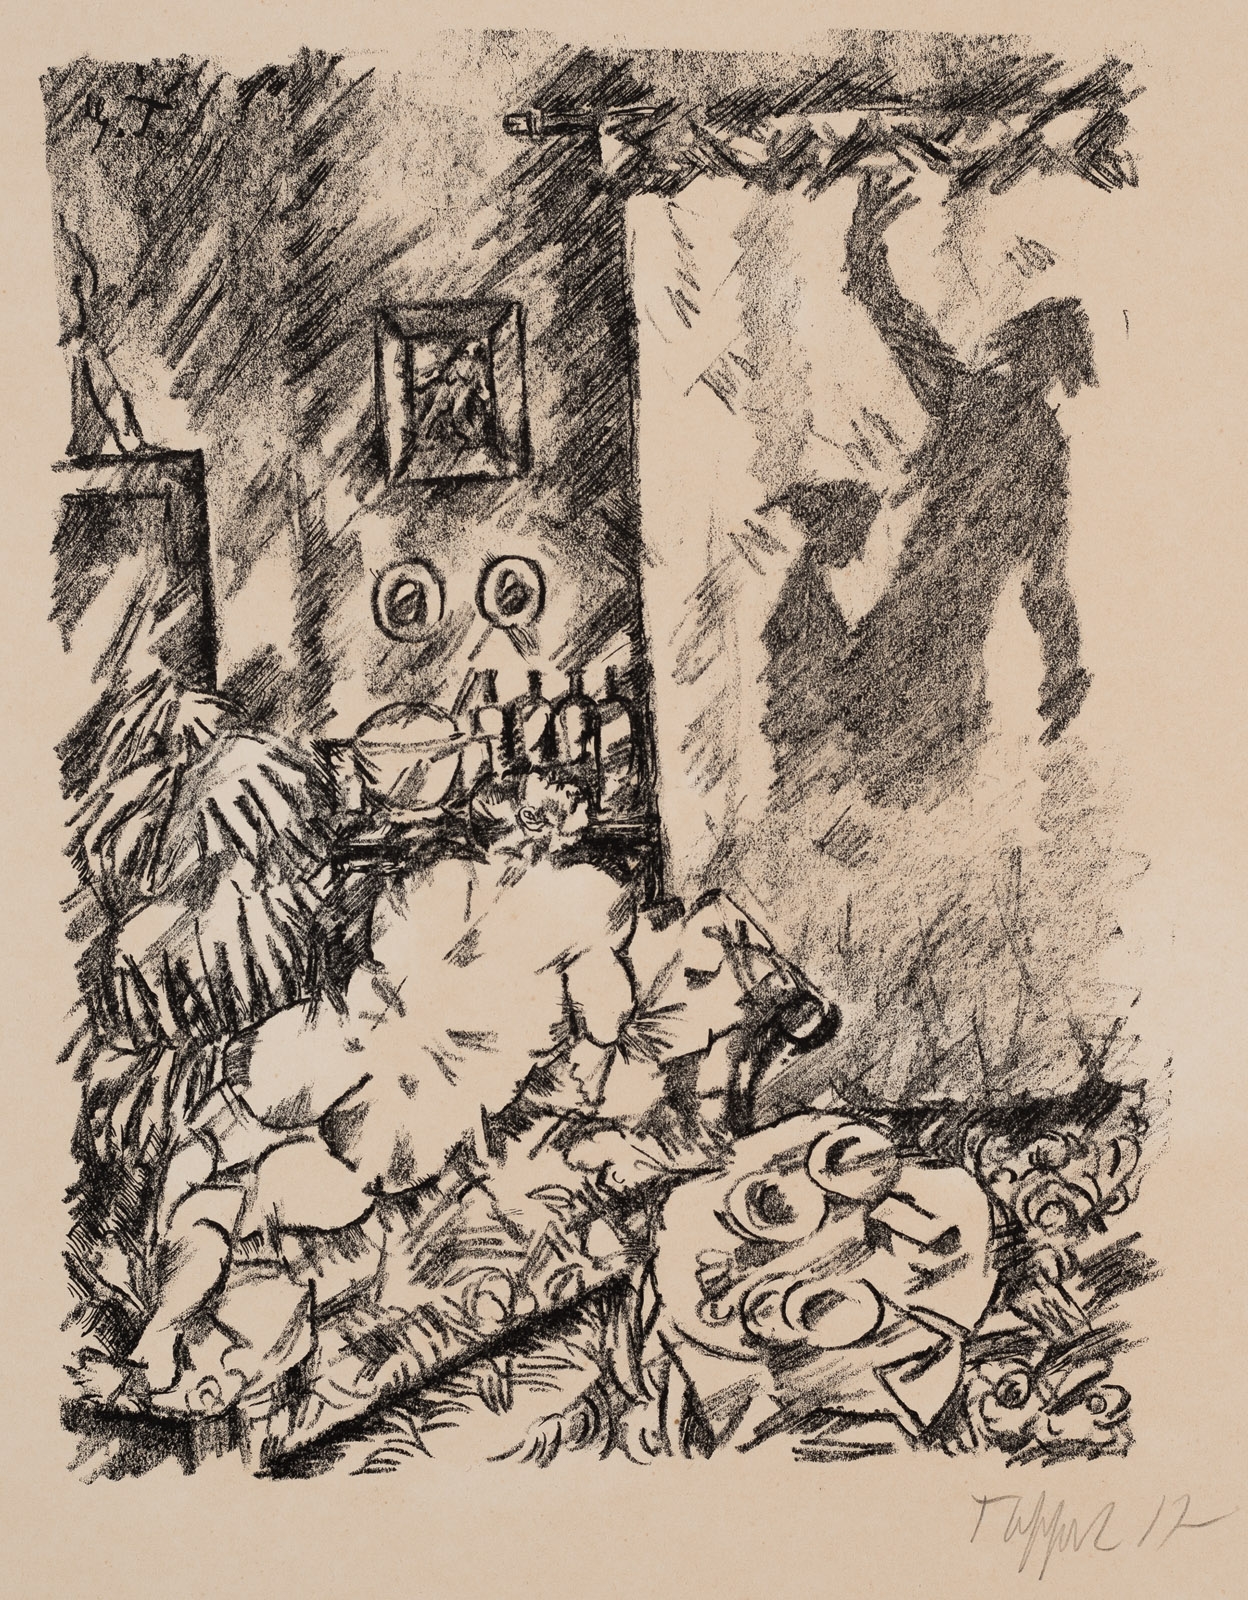 "Posinsky auf der Lauer" by Georg Tappert, 1917